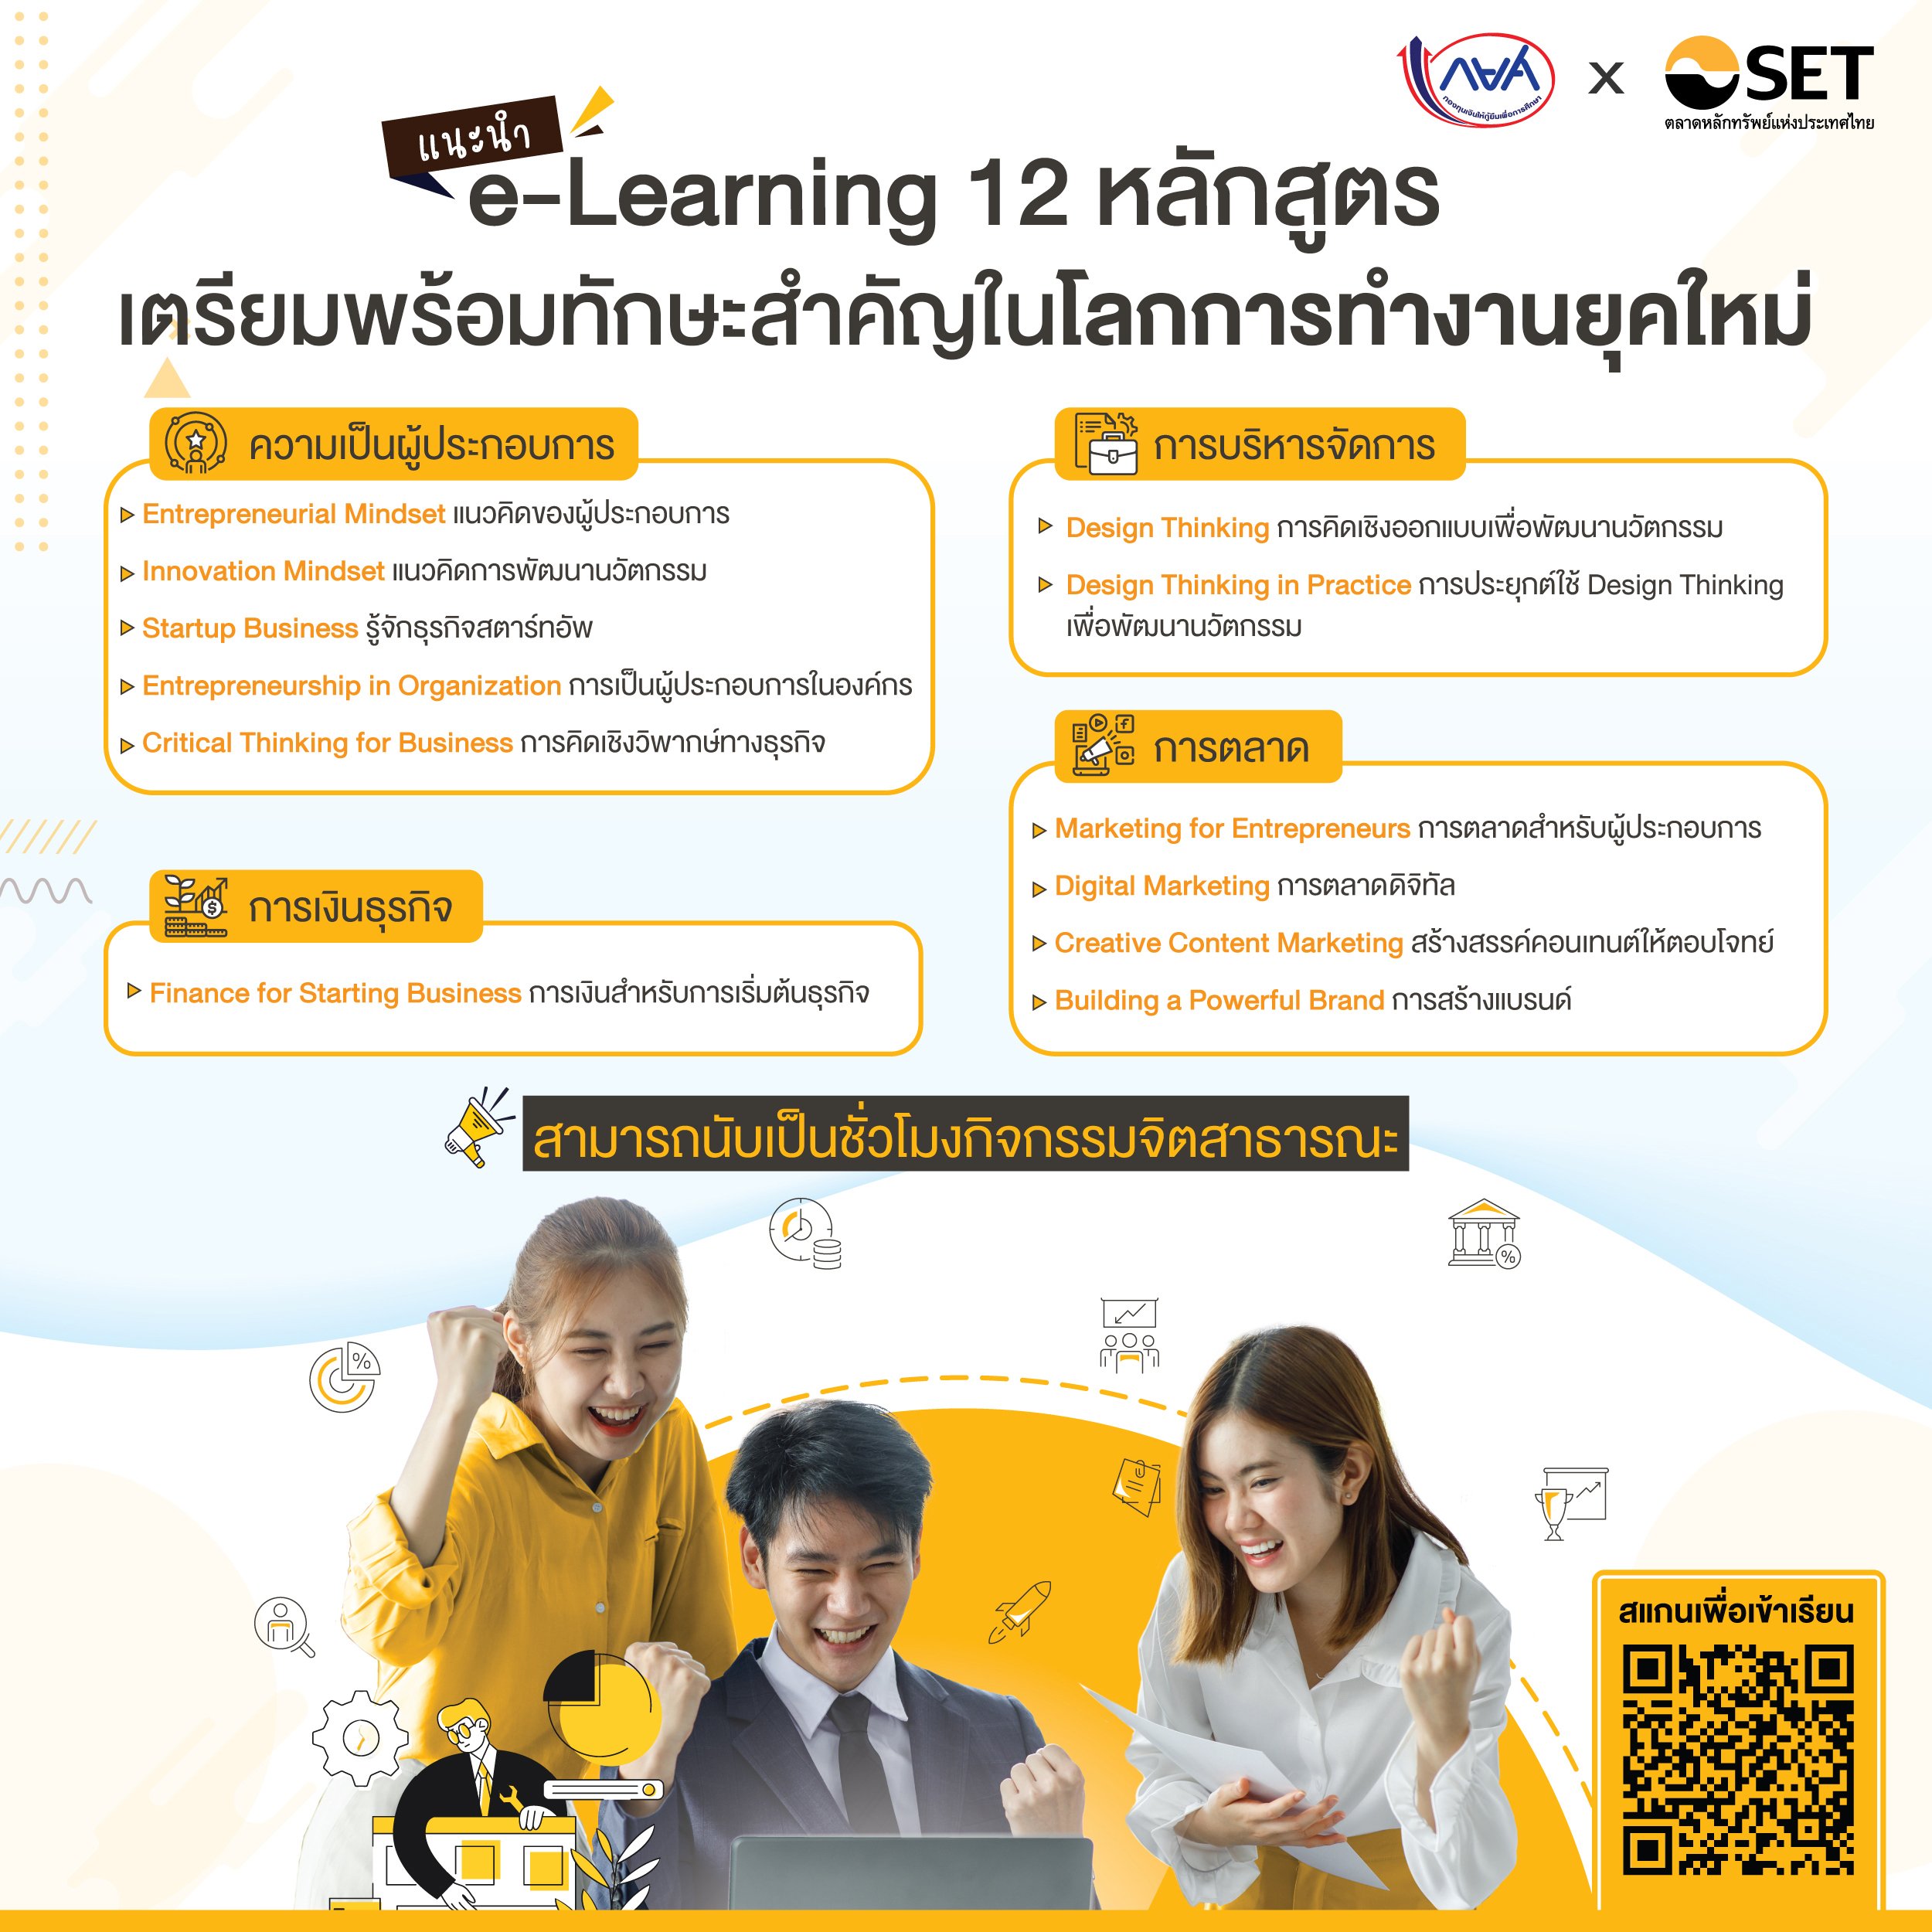 แนะนำ e-Learning 12 หลักสูตร เตรียมพร้อมทักษะสำคัญในโลกการทำงานยุคใหม่ สำหรับผู้กู้ยืม กยศ.